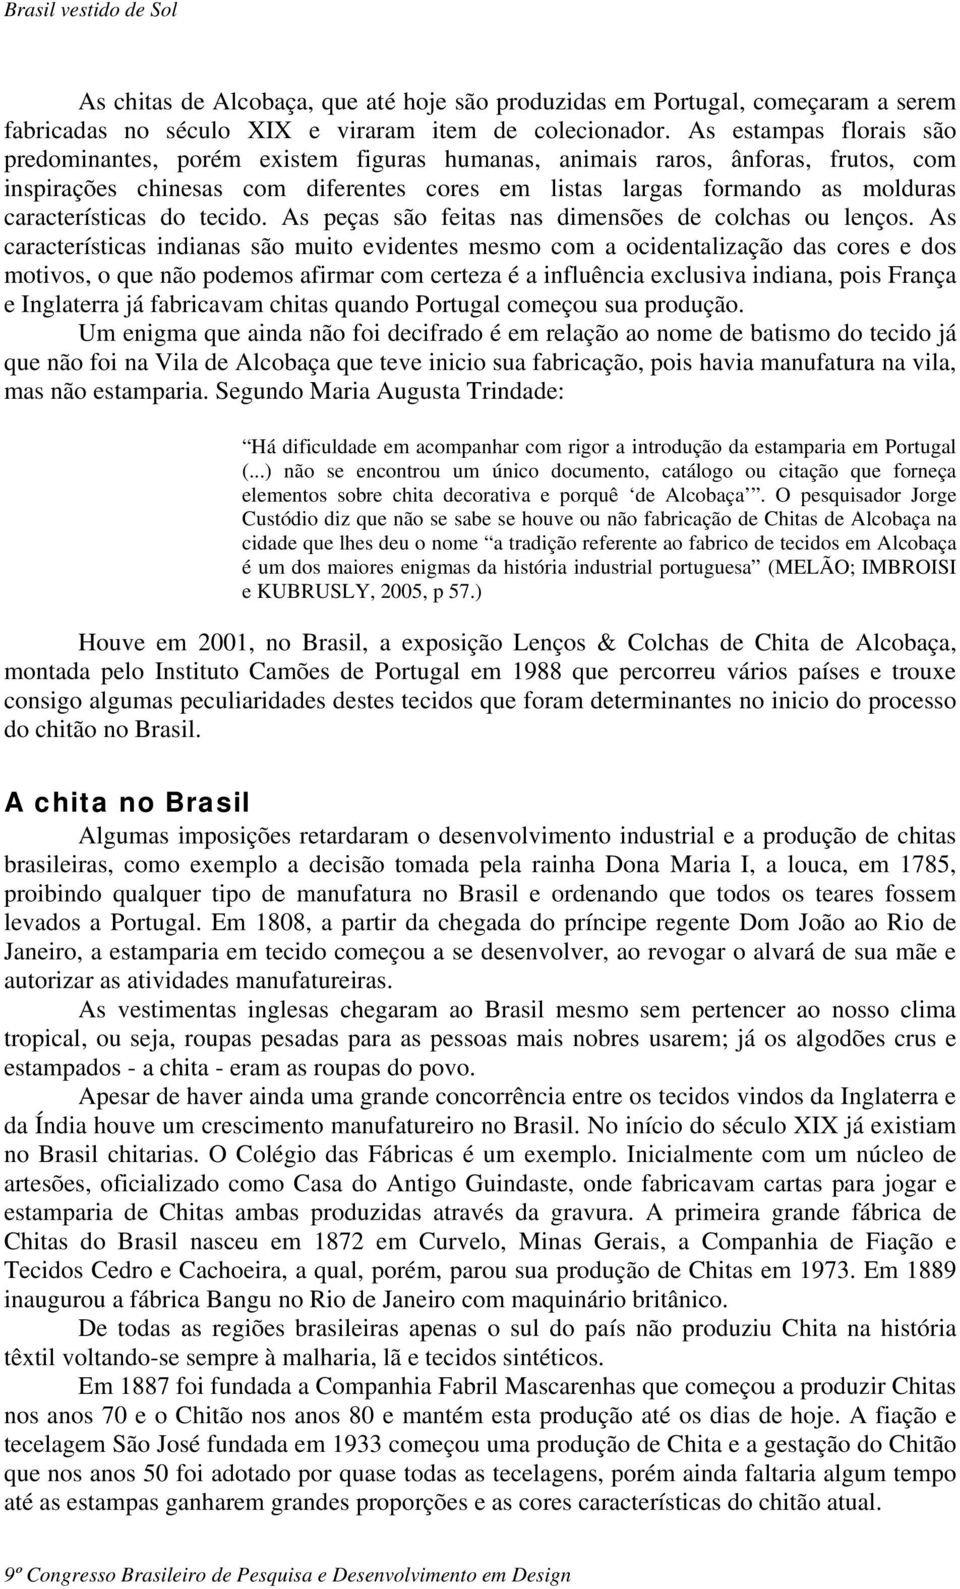 Brasil vestido de sol - PDF Download grátis